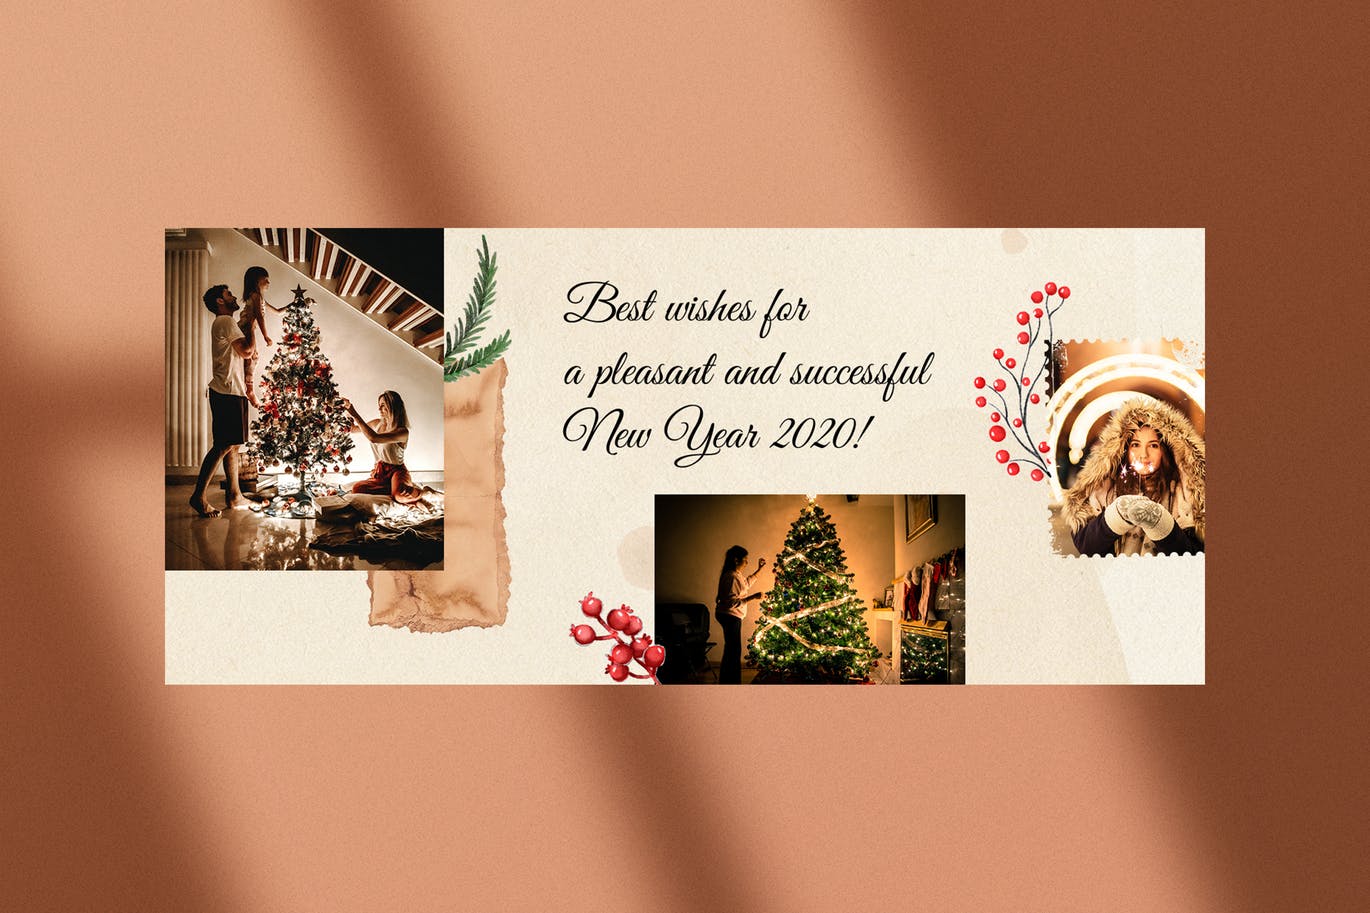 撕纸艺术风格圣诞节主题Facebook社交封面设计模板大洋岛精选 Christmas Facebook Covers插图3